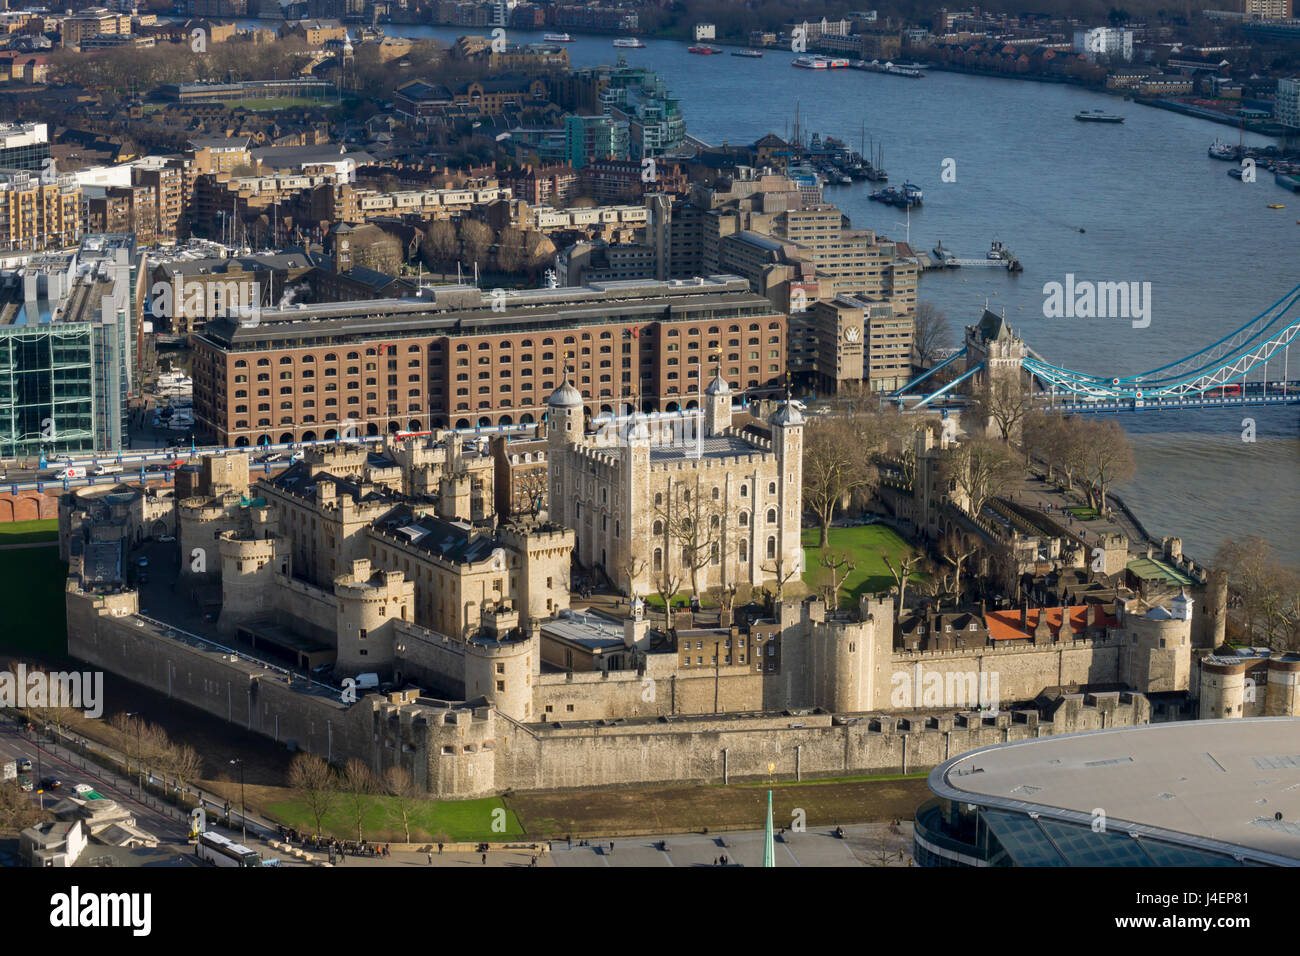 Vue aérienne de la Tour de Londres, l'UNESCO World Heritage Site, Londres, Angleterre, Royaume-Uni, Europe Banque D'Images